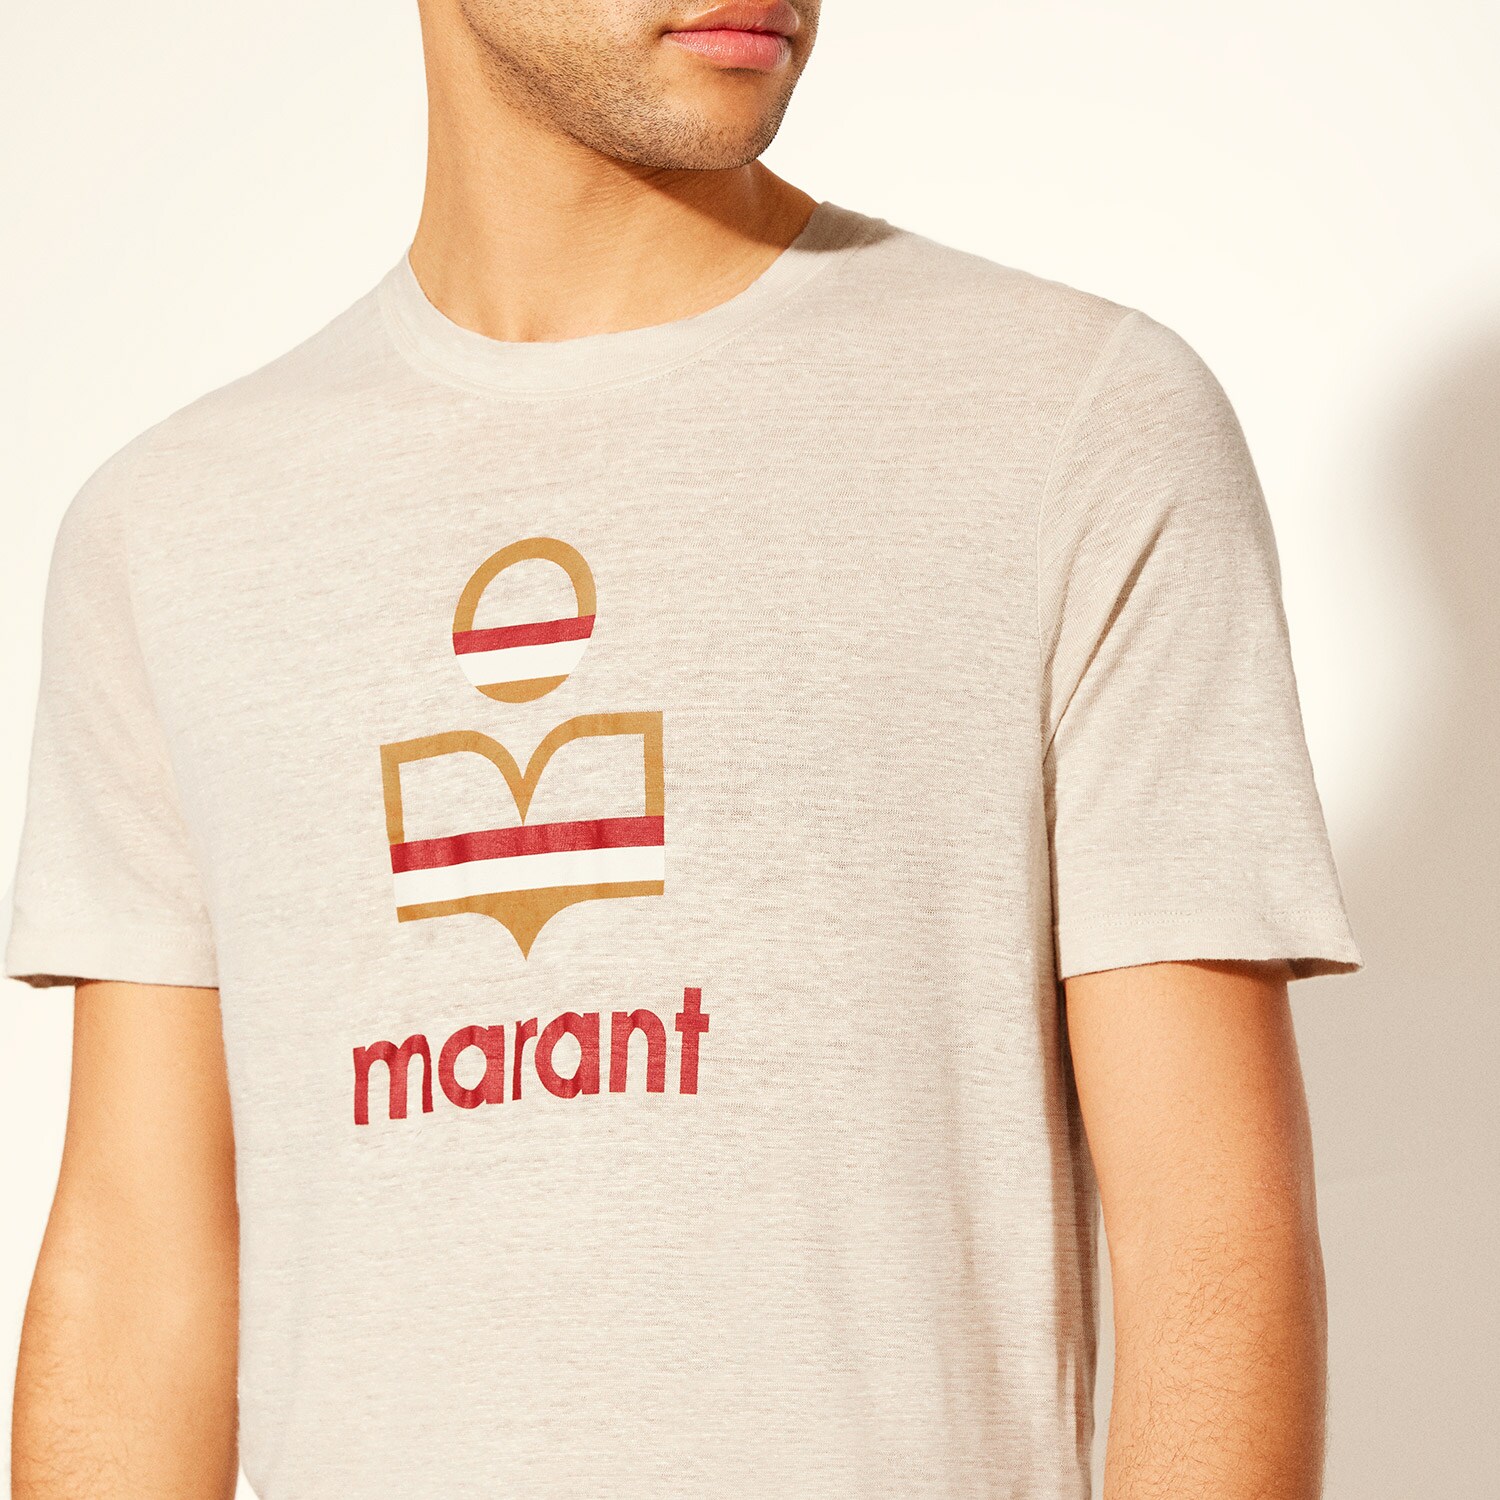 T-shirt Karman